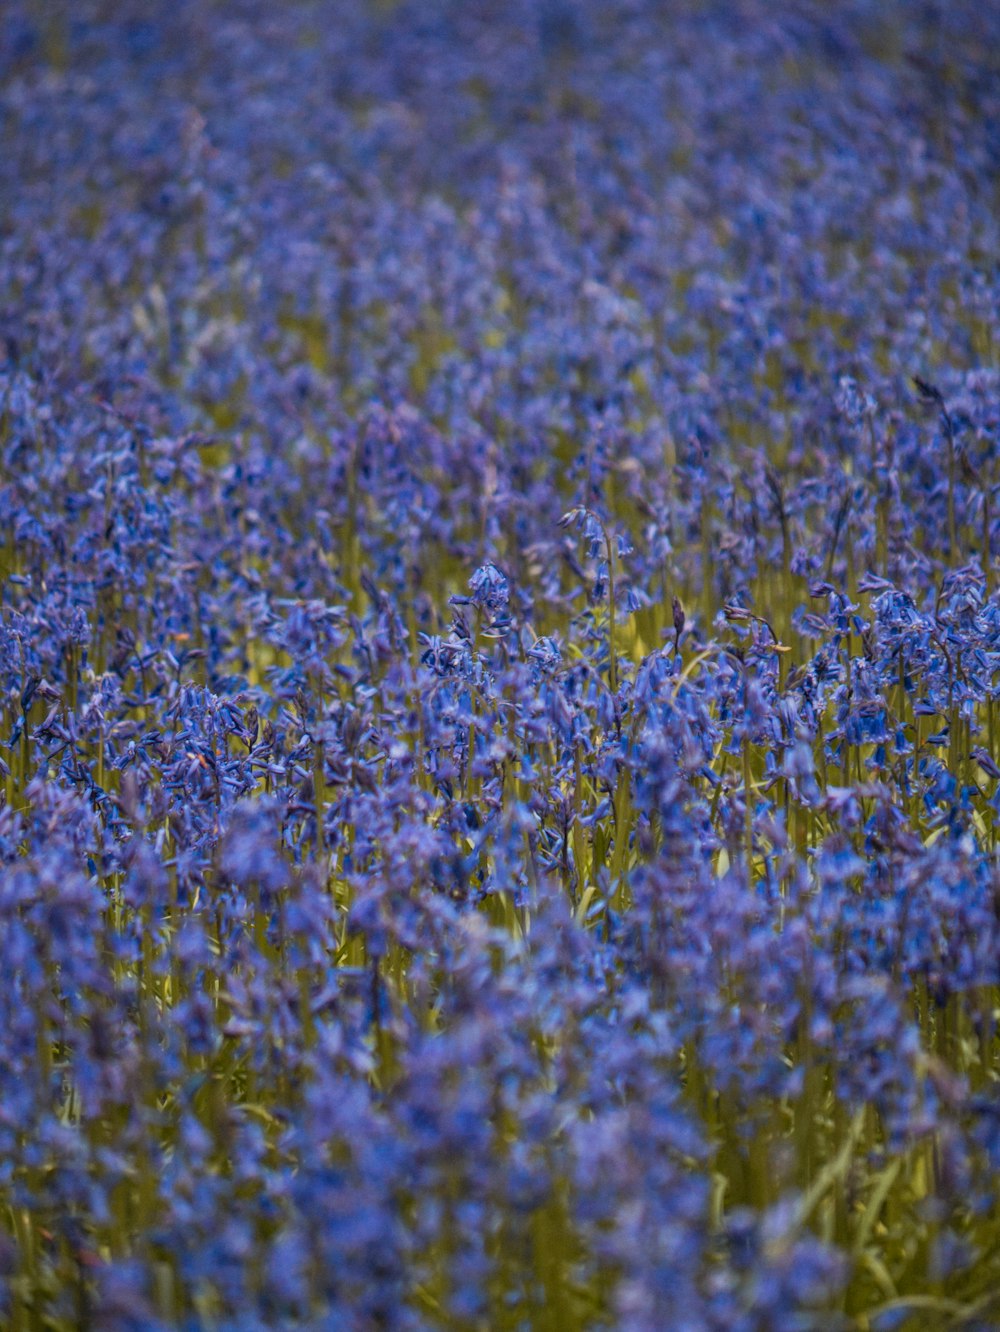 Un champ plein de fleurs bleues avec un oiseau au milieu du champ